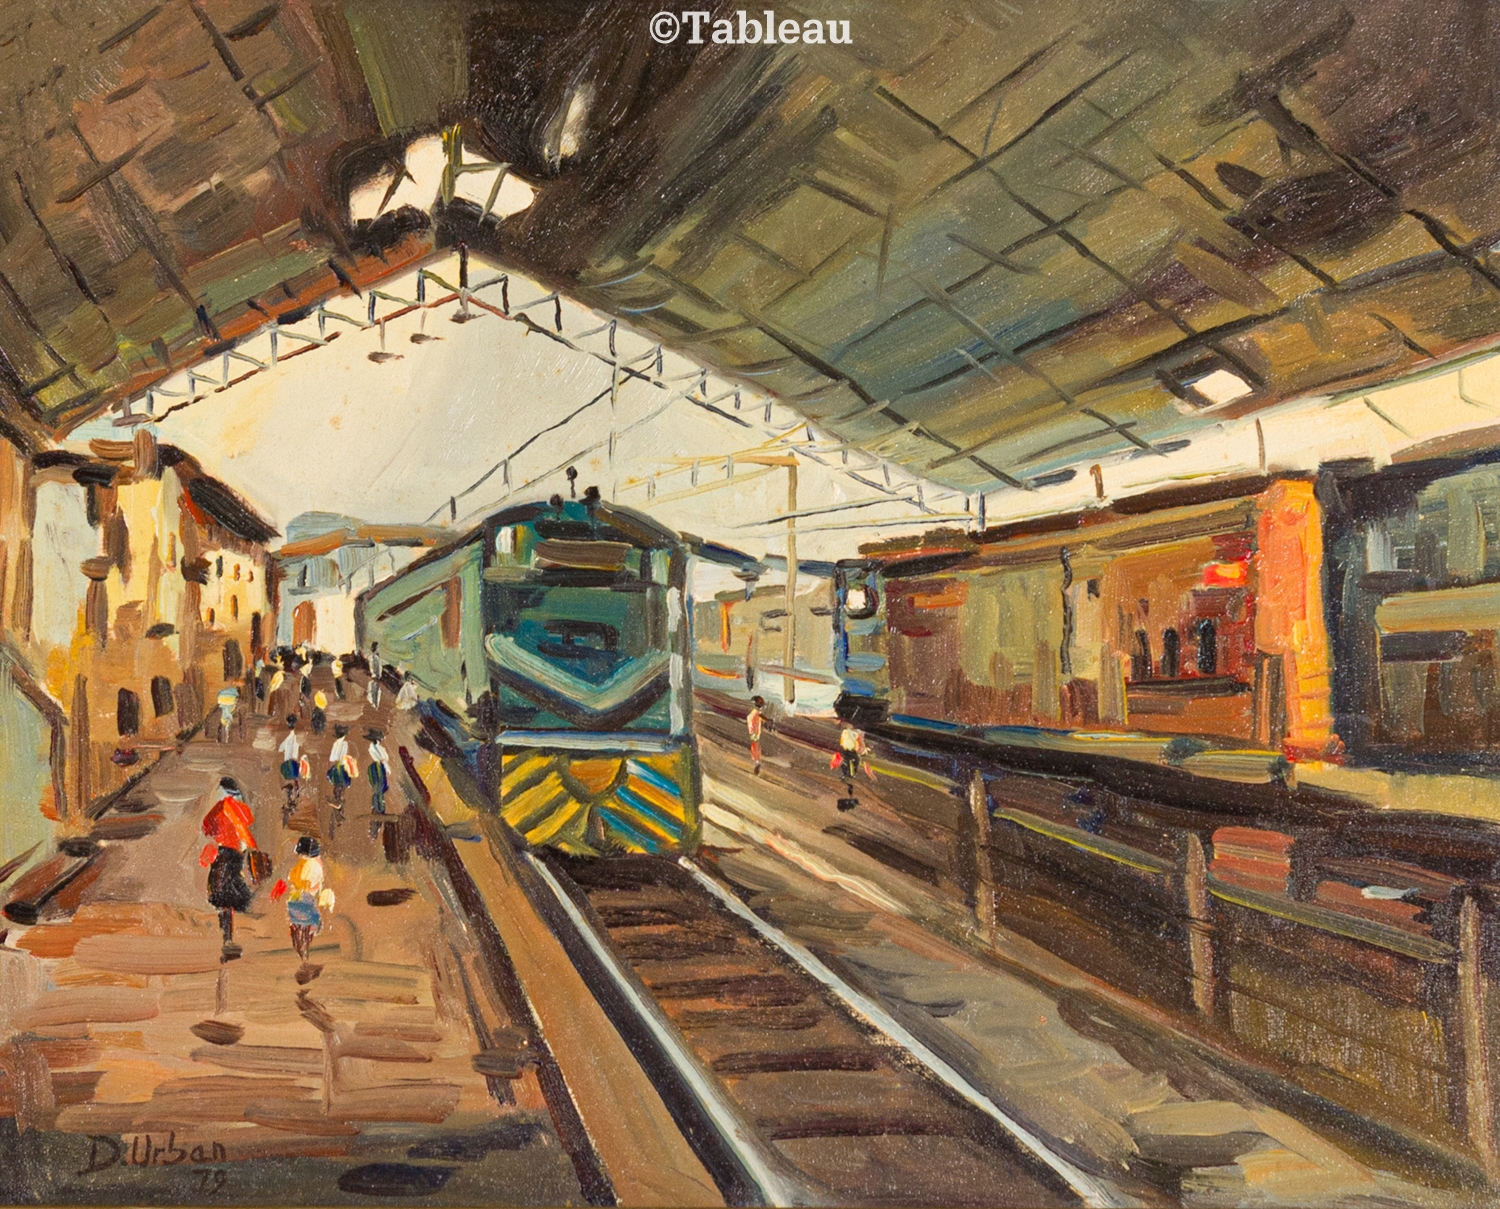 Estação de trem by Djalma Urban, 1979